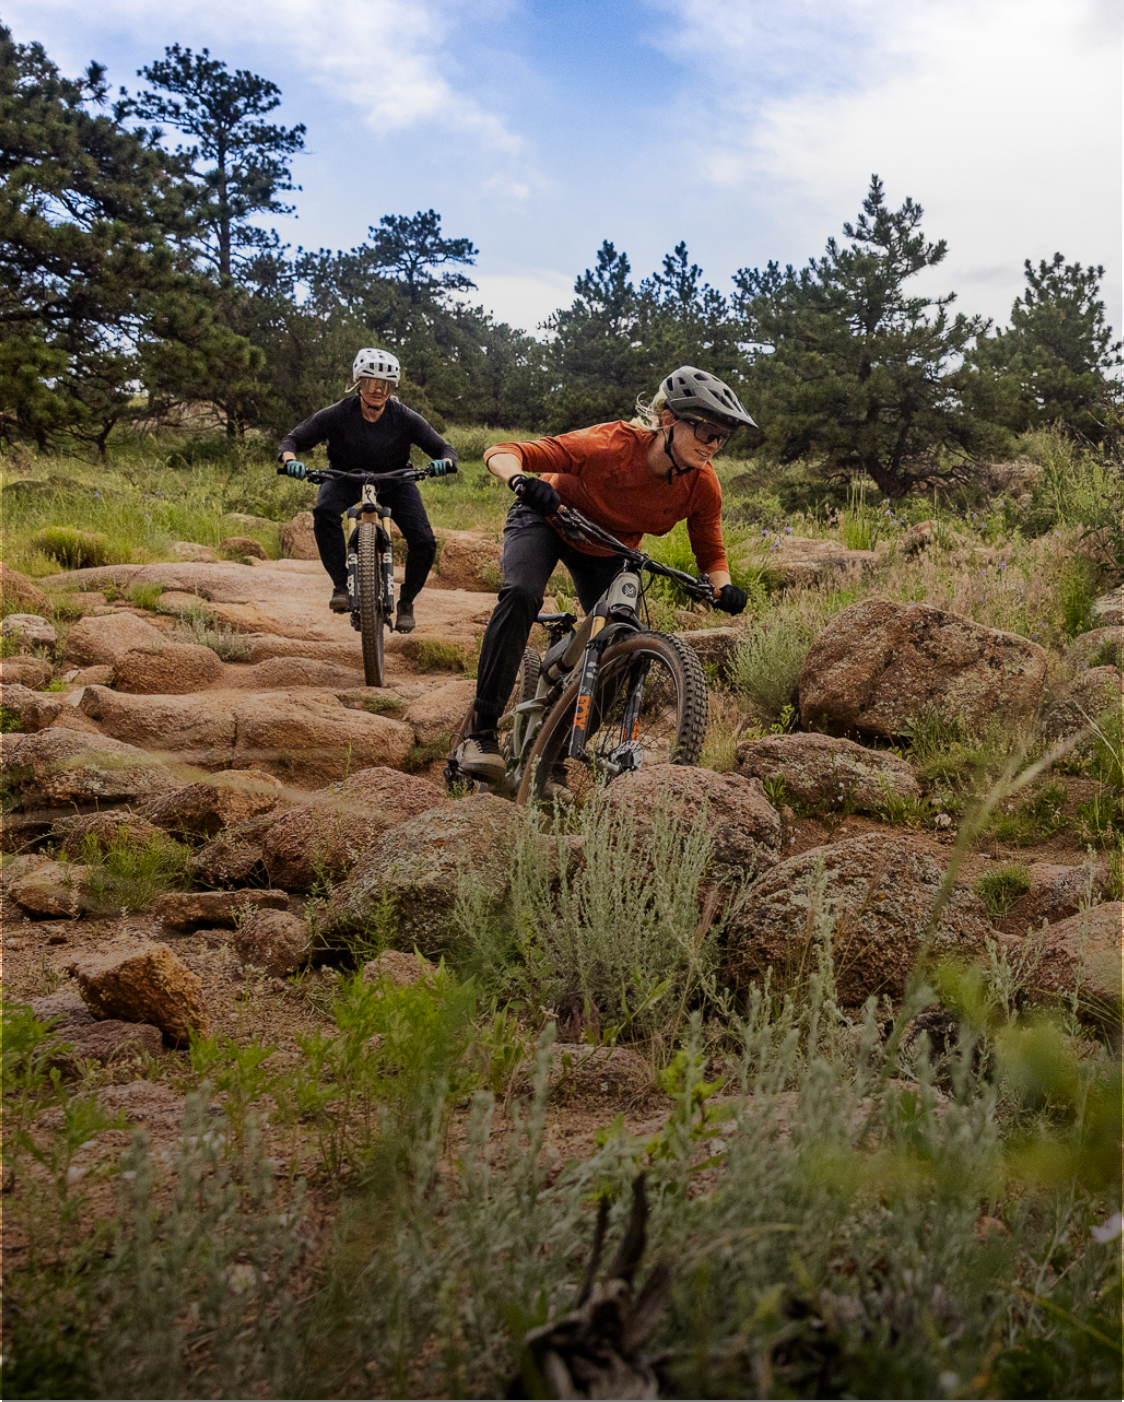 Two downhill mountain bikers going a rocky trail wearing PEARL iZUMi mountain bike gear.